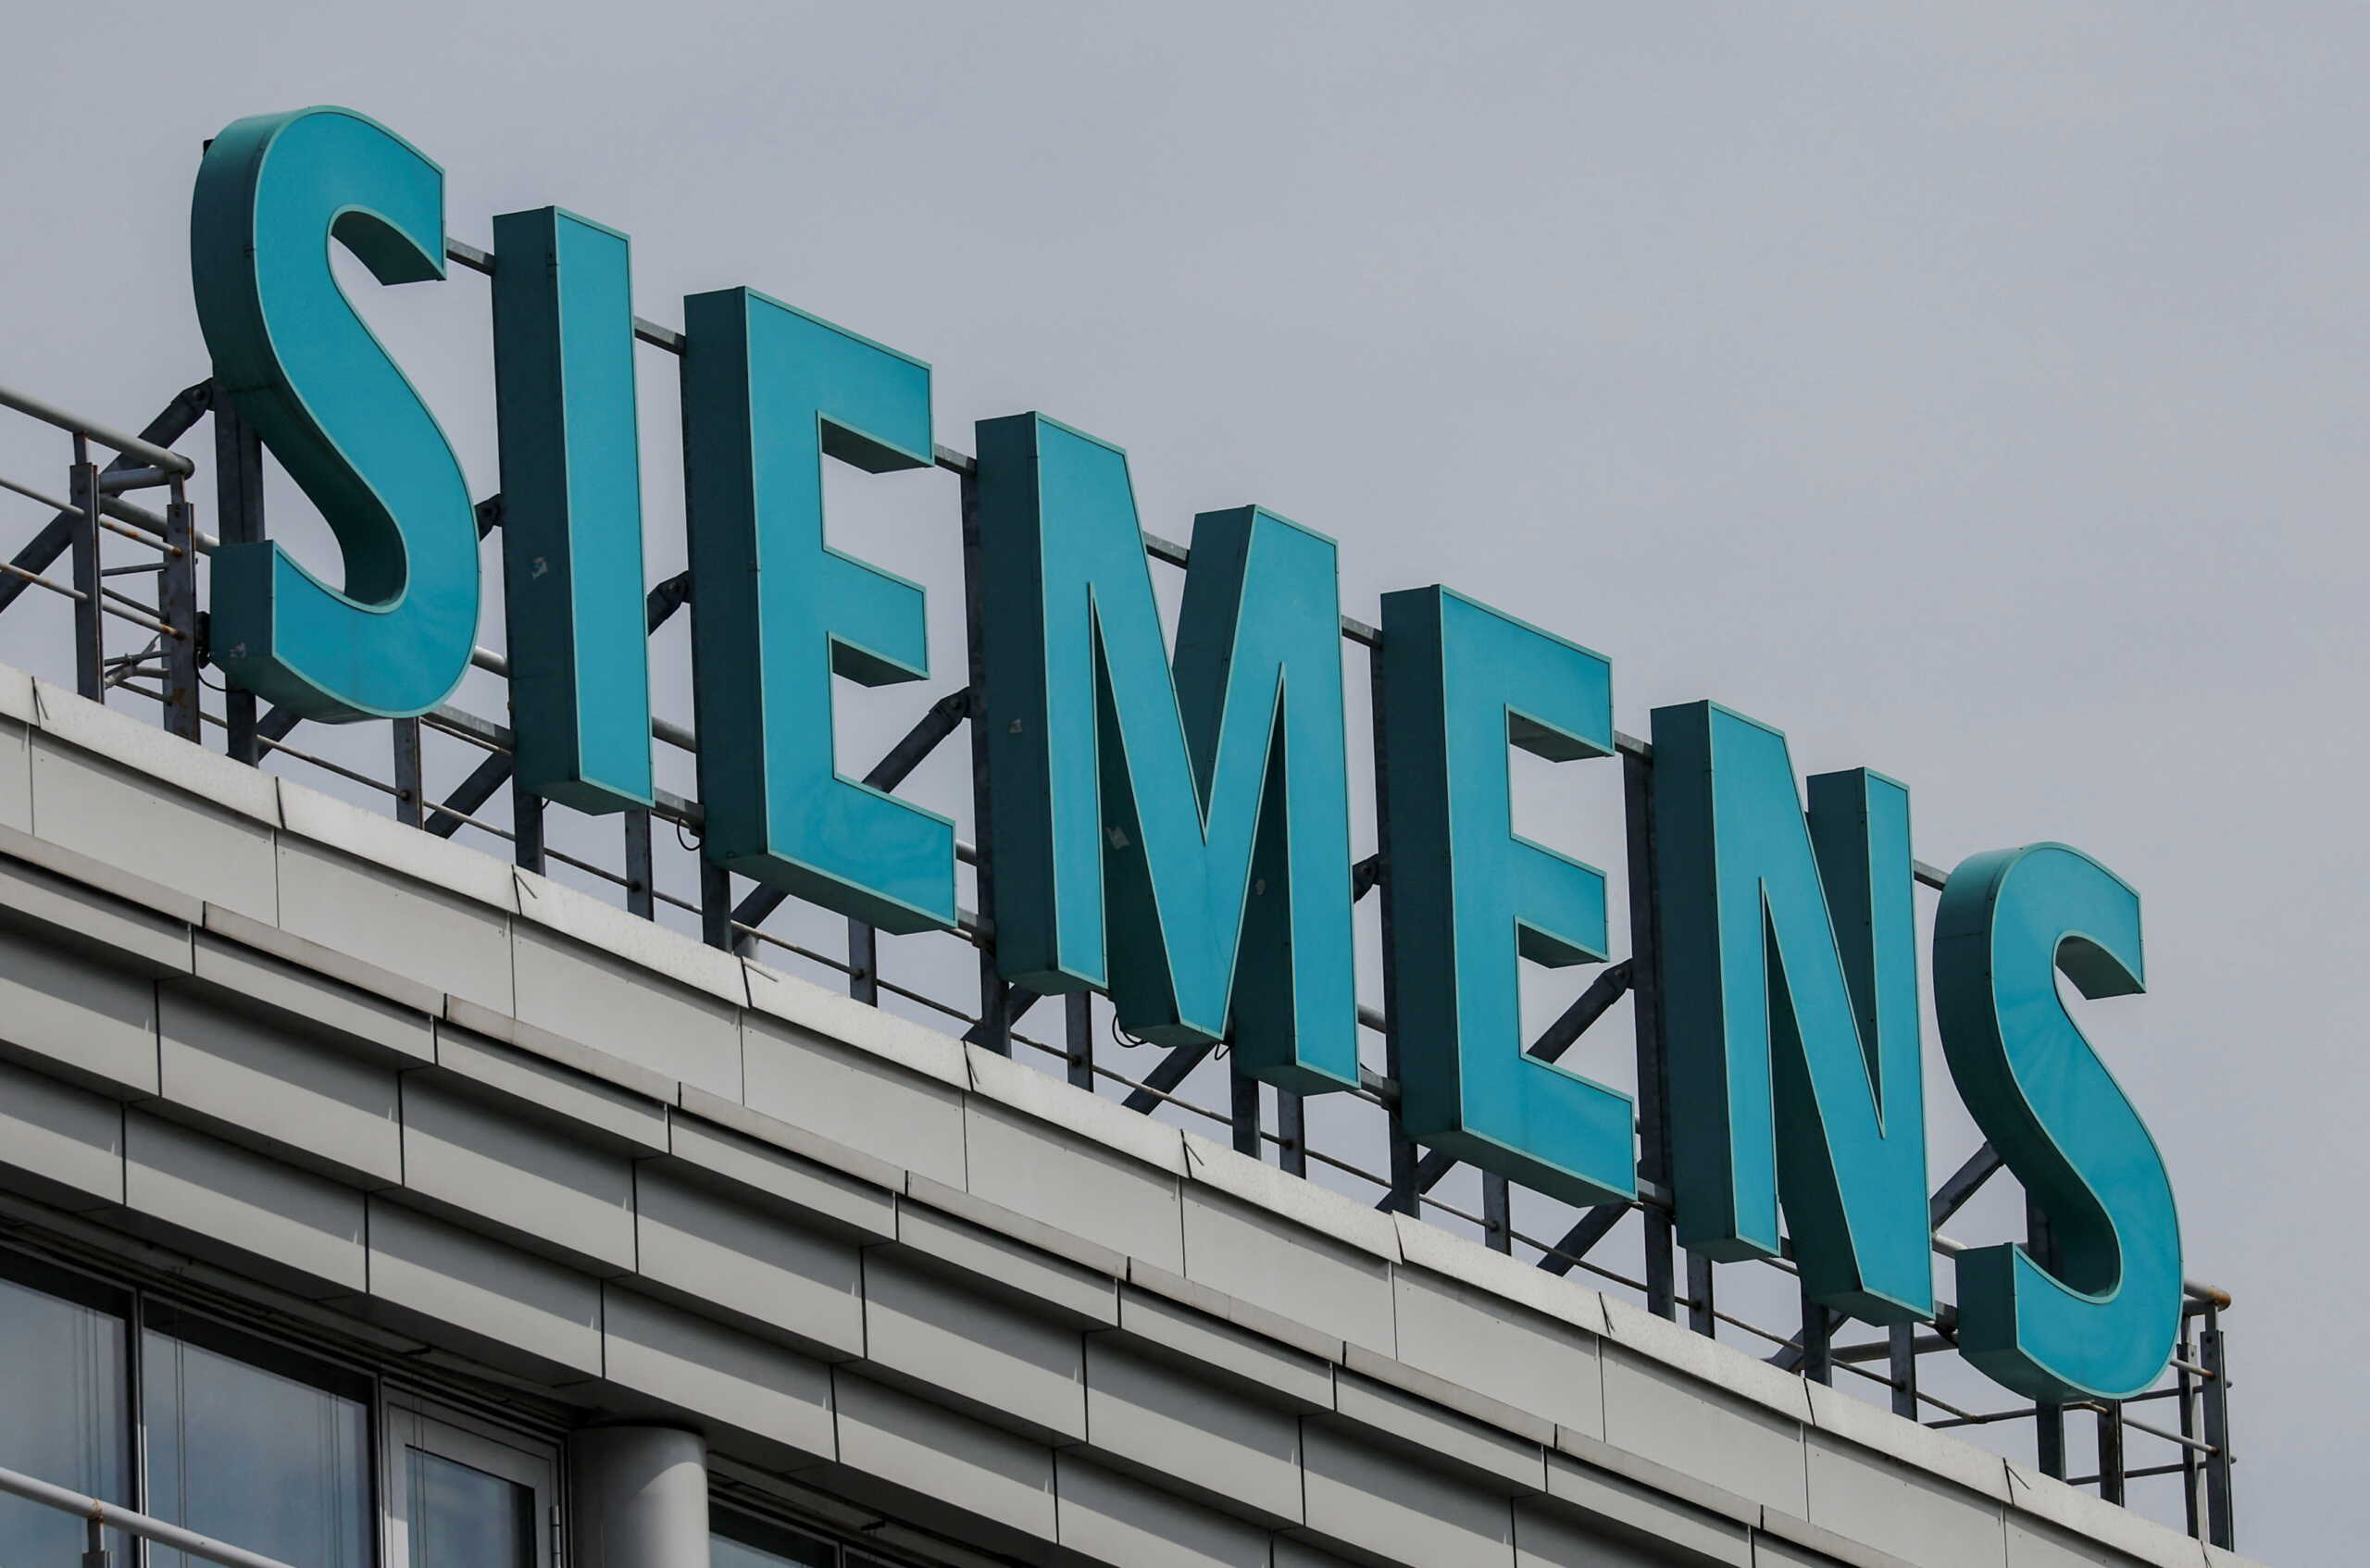 Υπόθεση Siemens: Έρευνα για την παραγραφή των αδικημάτων από τον Άρειο Πάγο